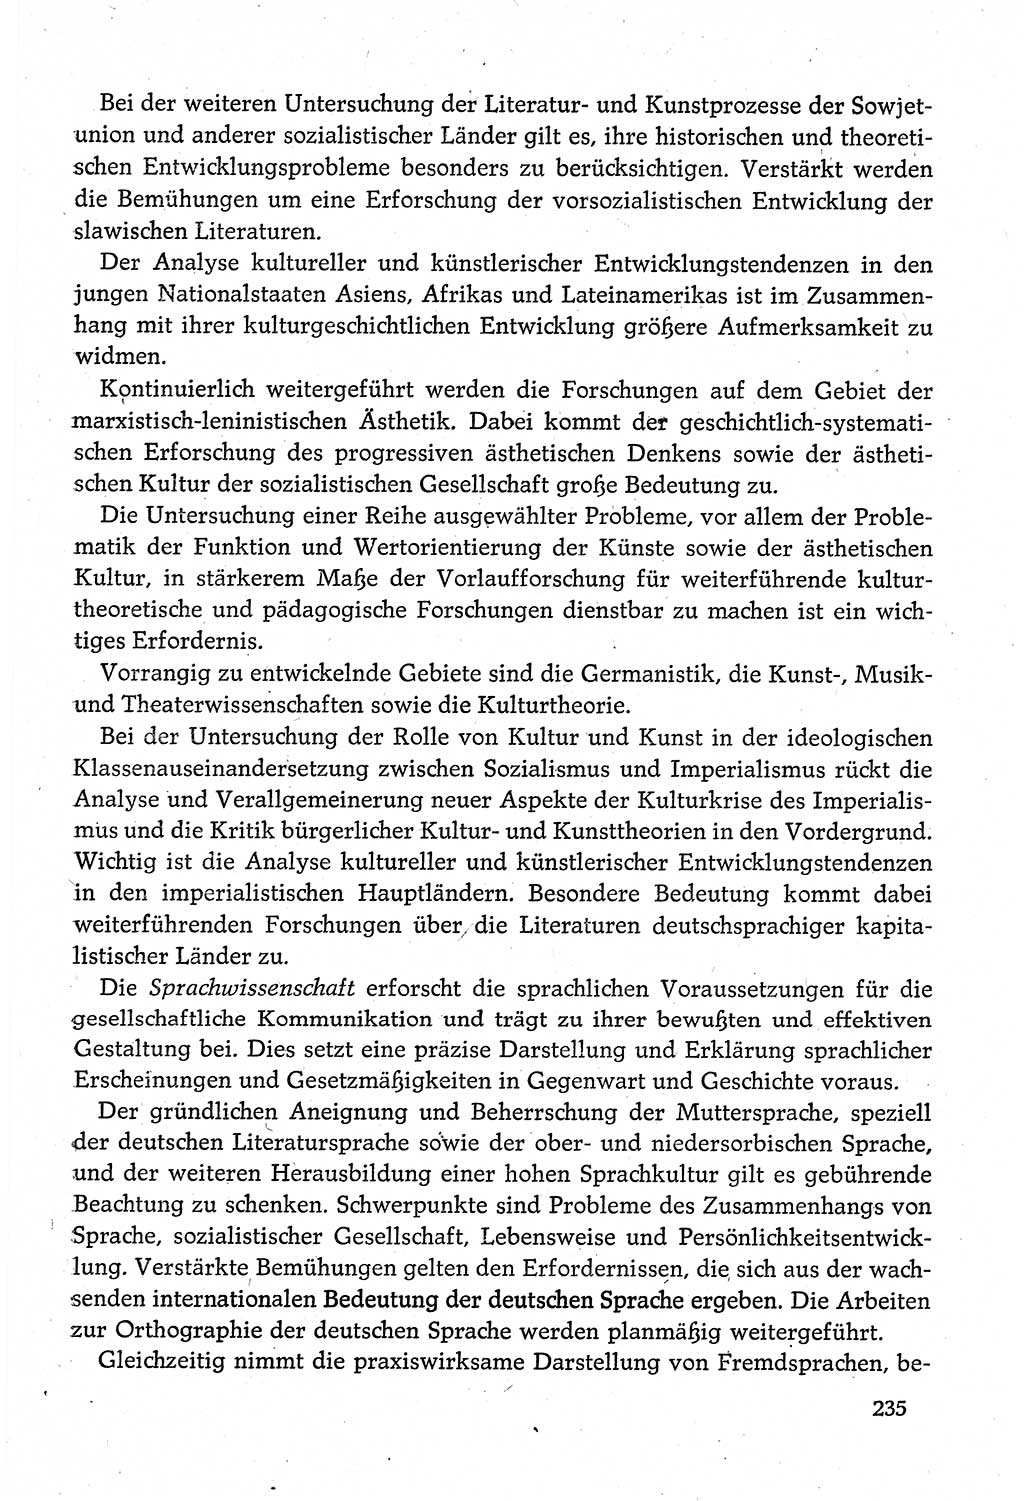 Dokumente der Sozialistischen Einheitspartei Deutschlands (SED) [Deutsche Demokratische Republik (DDR)] 1980-1981, Seite 235 (Dok. SED DDR 1980-1981, S. 235)